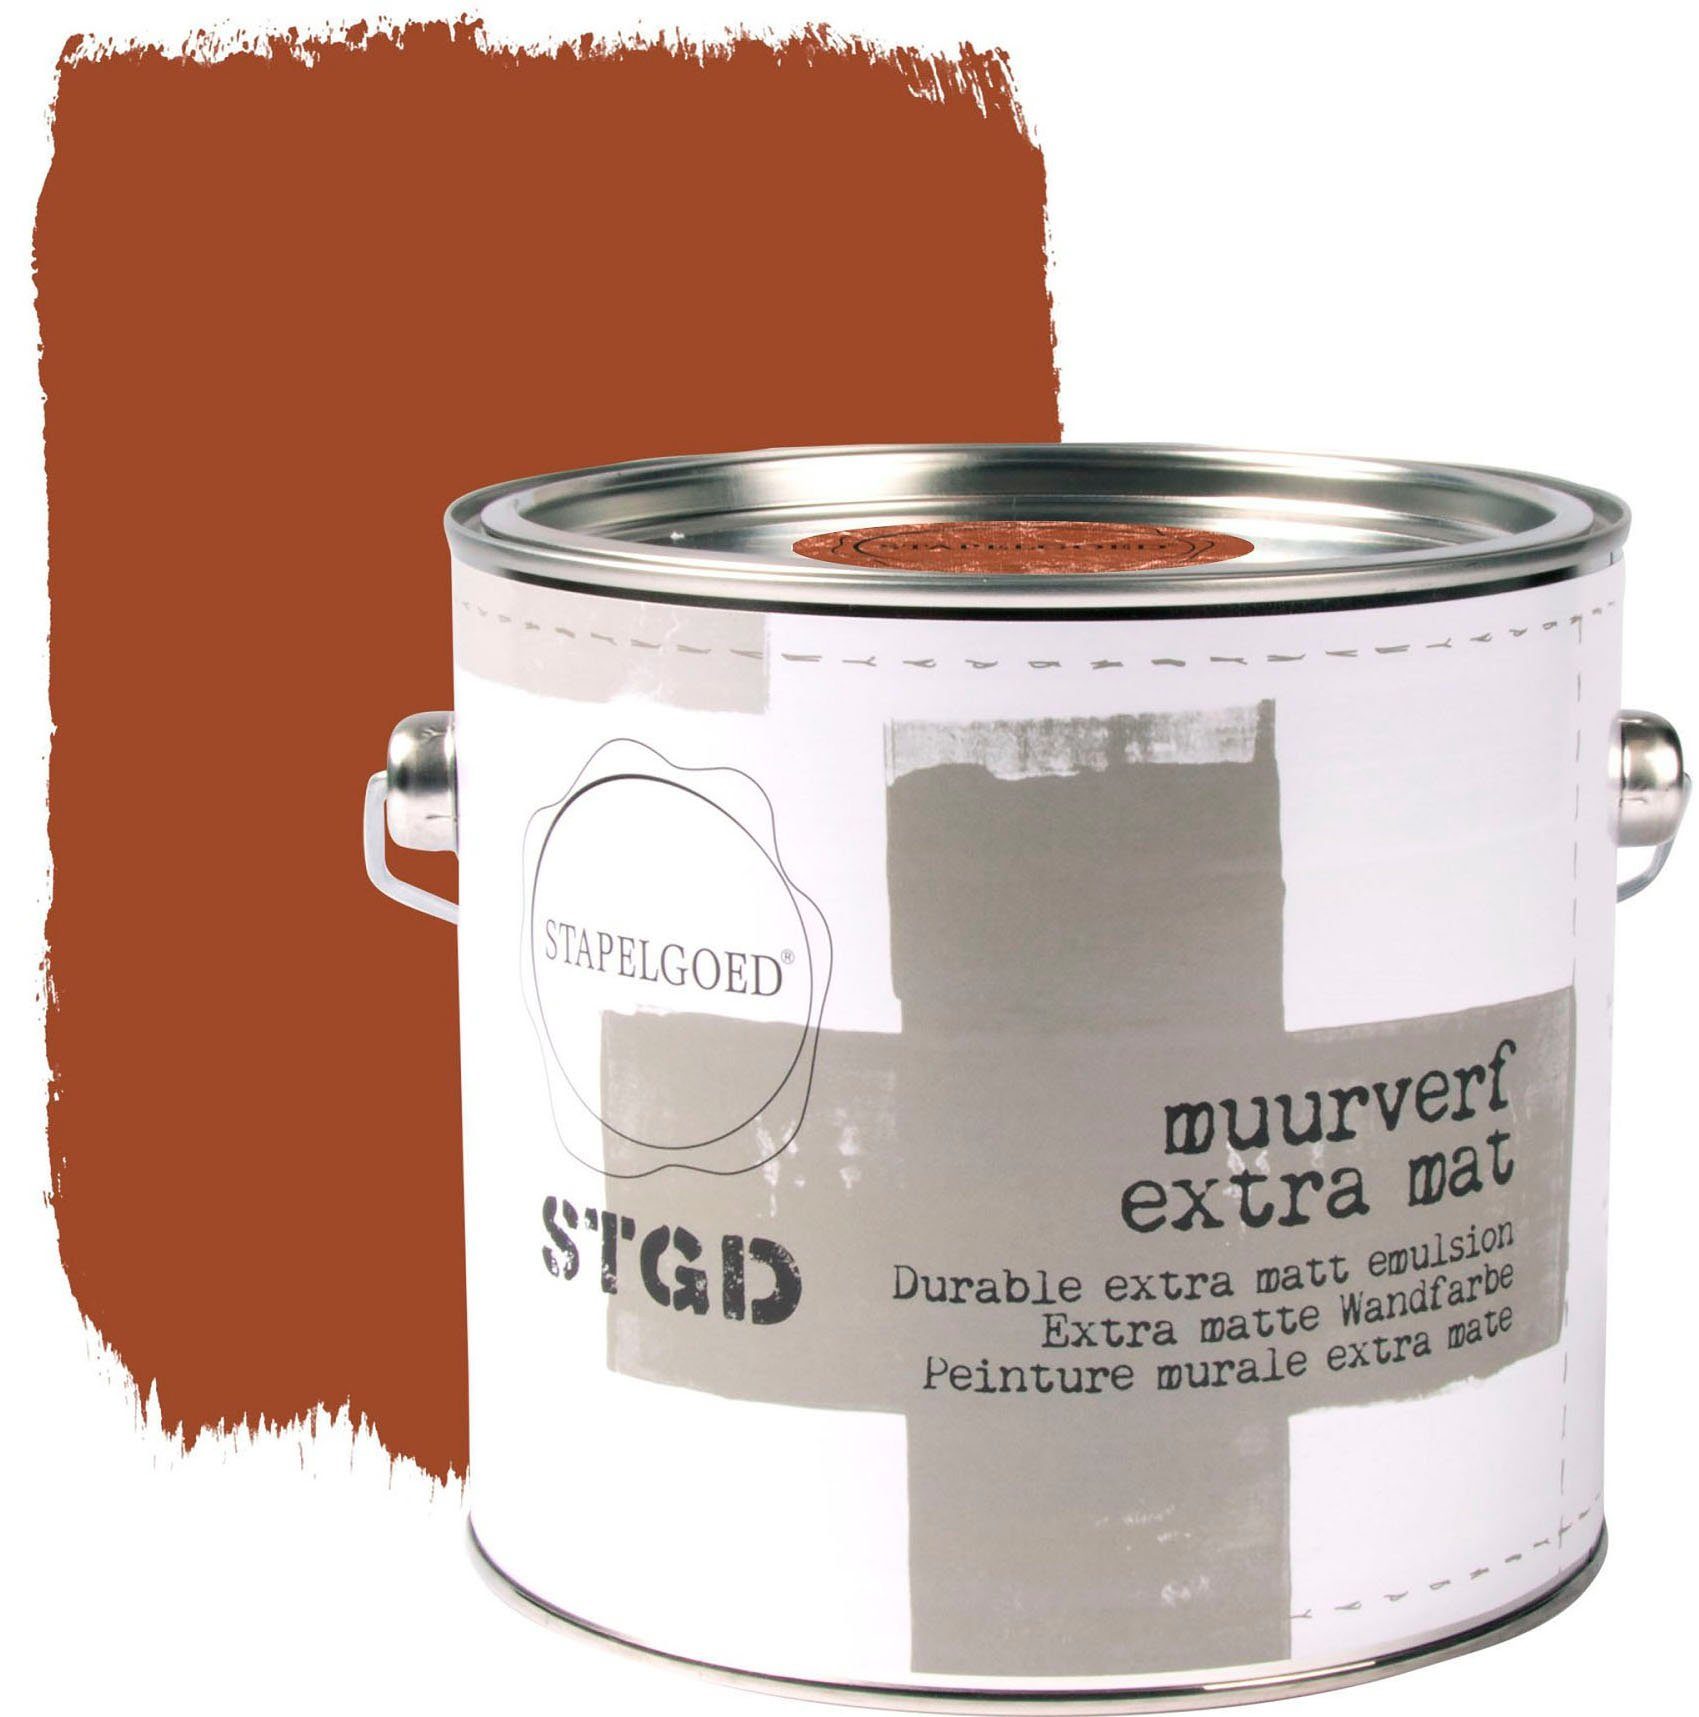 STAPELGOED Wandfarbe STGD muurverf brown shades, extra matt, hochdeckend und waschbeständig, 2,5 Liter Coconut Braun